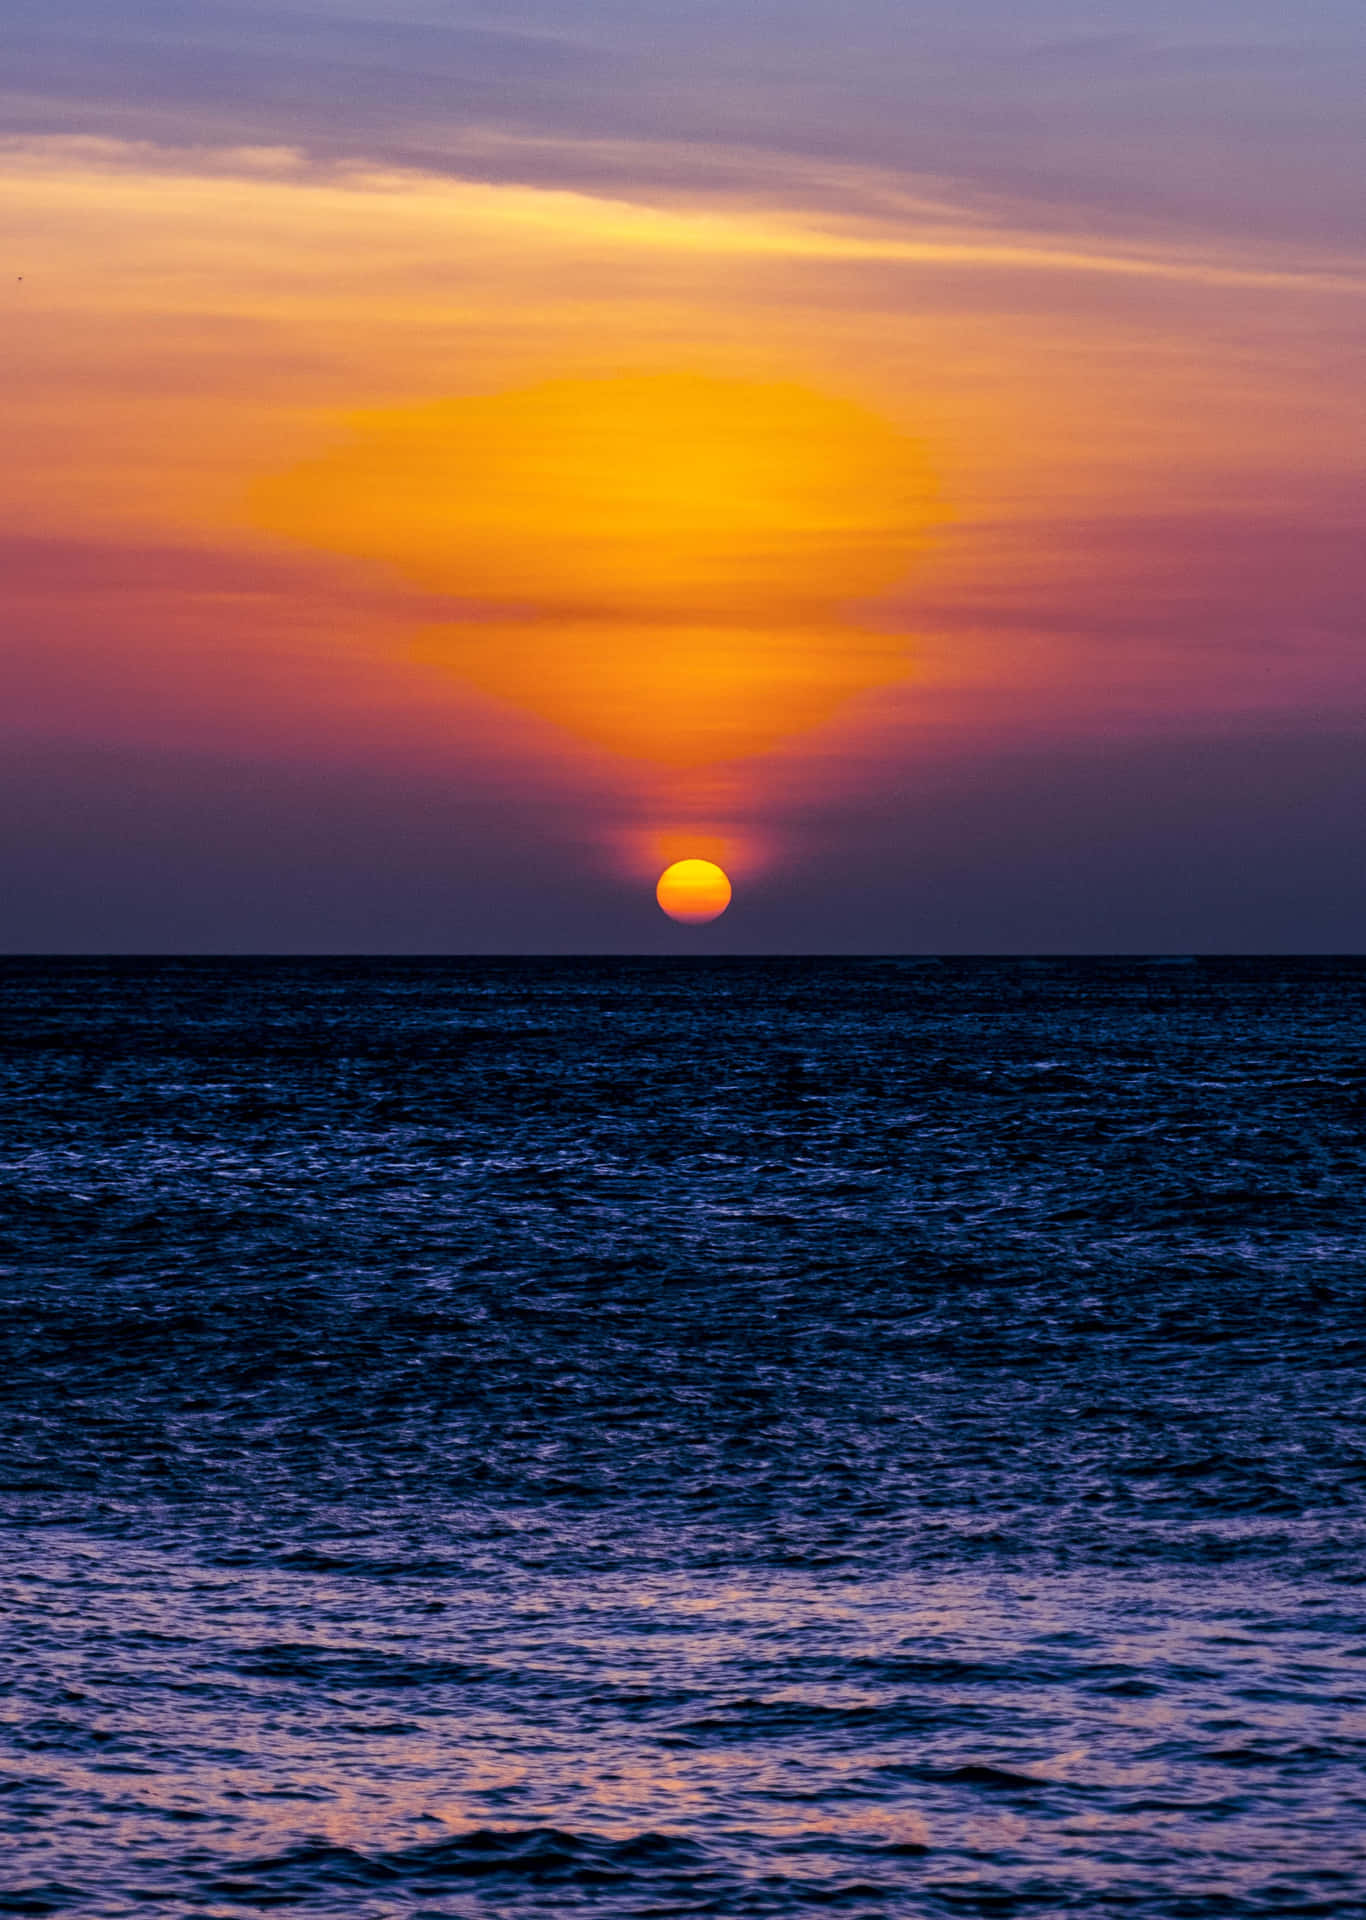 Sort blå hav under smuk solnedgang billede